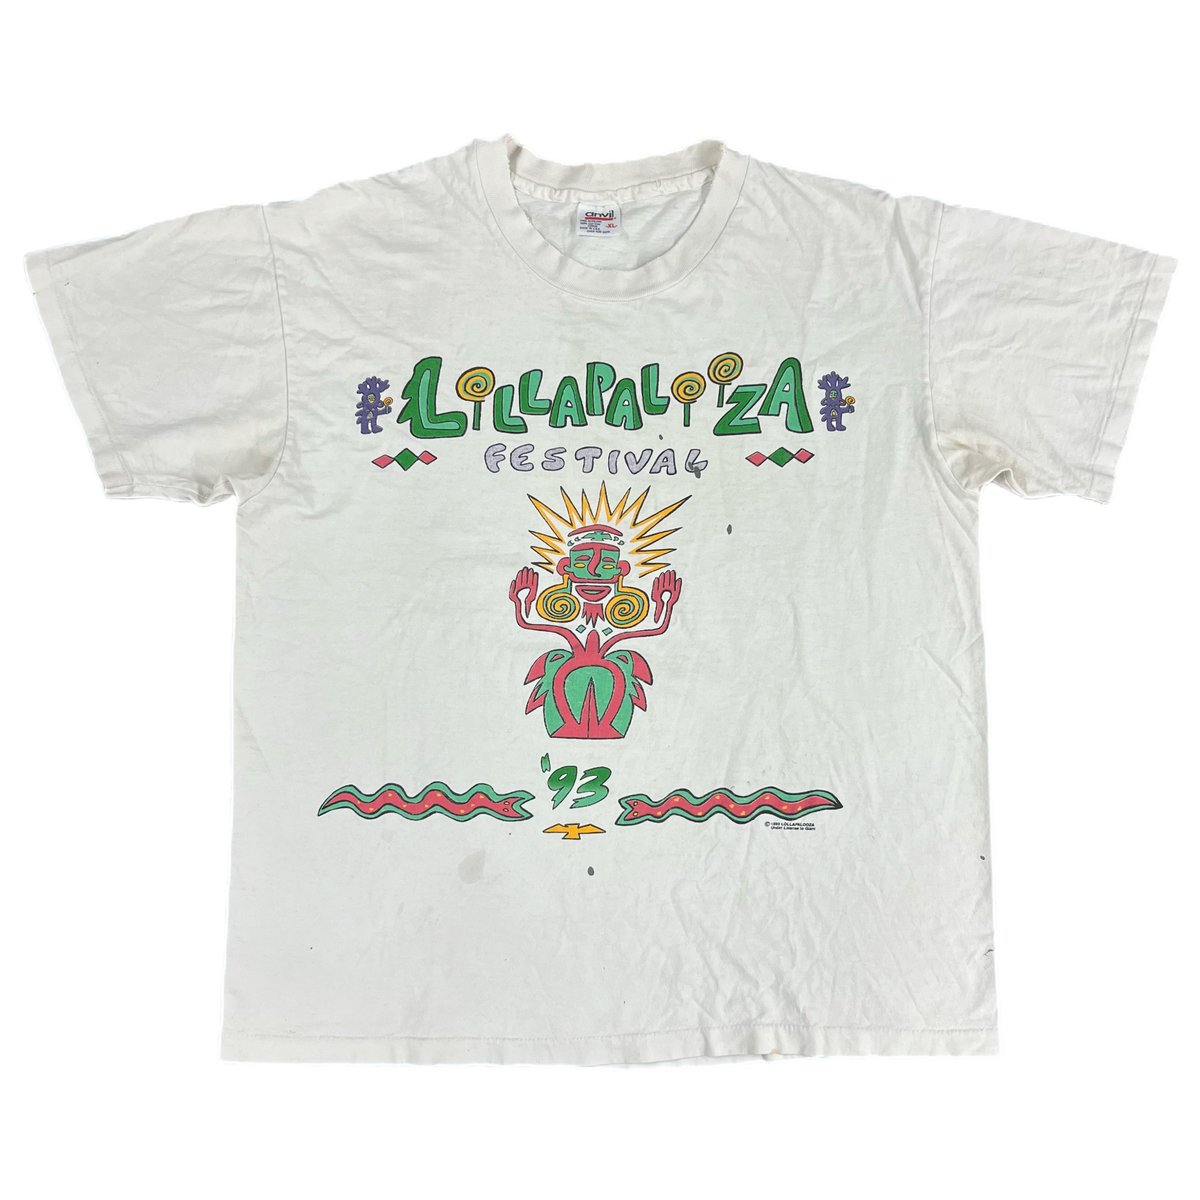 Vintage Lollapalooza &quot;1993&quot; Festival T-Shirt